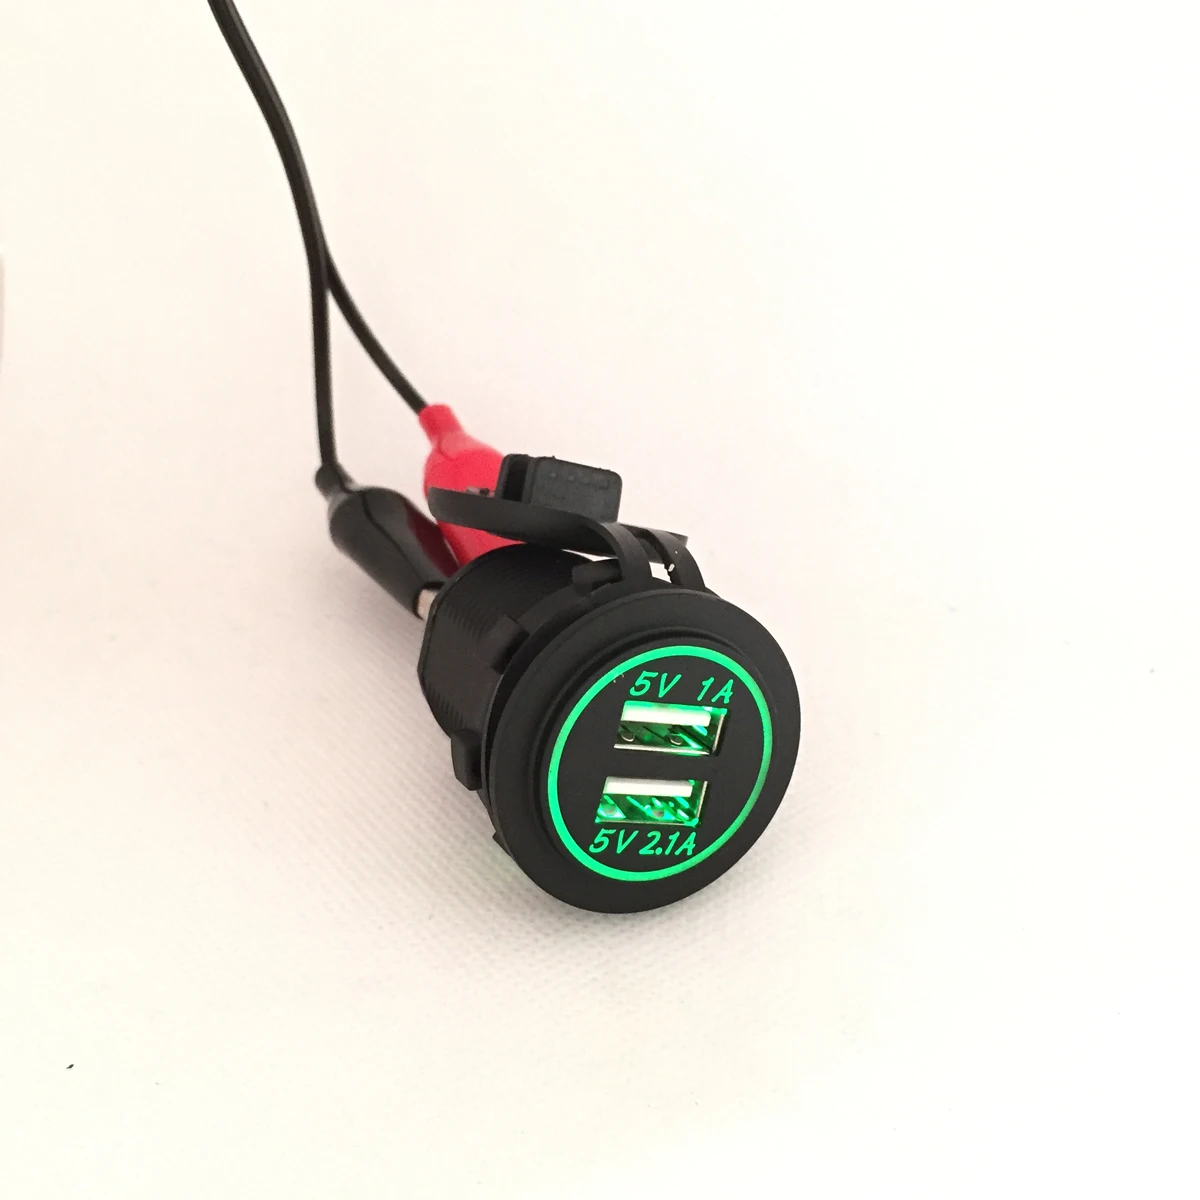 DIY 12 V-24 V устройство для автомобиля с двумя портами USB Зарядное устройство Мощность выход 1A& 2.1A зарядное устройство для Ipad Iphone автомобиль лодка морской мобильный светодиодный светильник синий и красный цвета, зеленого, оранжевого цвета - Название цвета: Зеленый